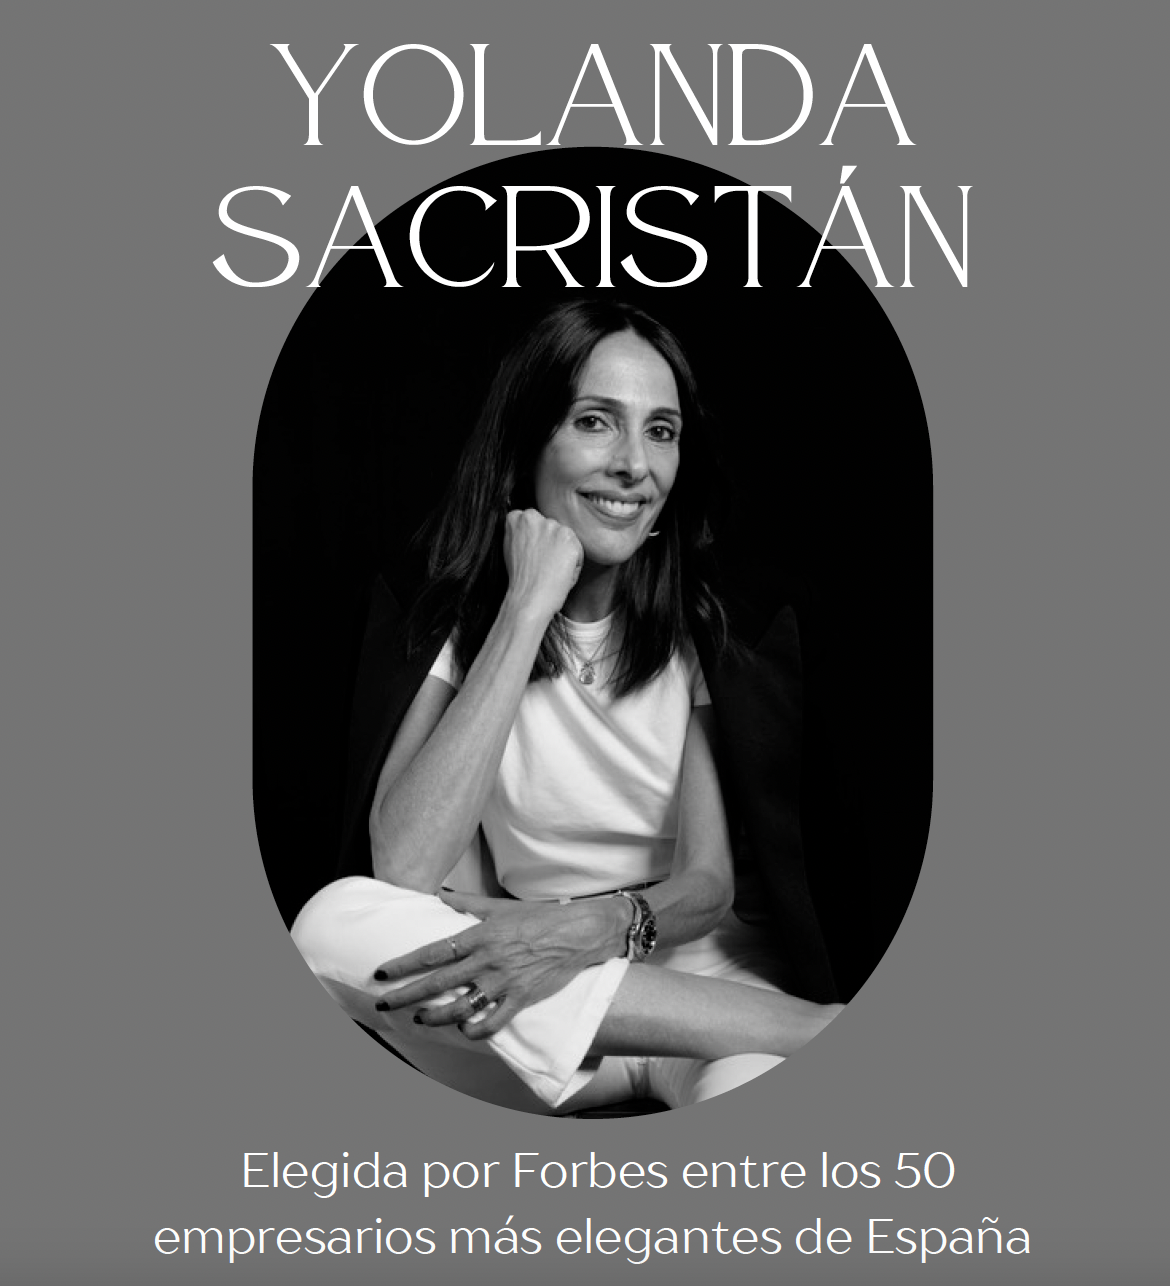 YOLANDA SACRISTÁN ELEGIDA POR FORBES ENTRE LOS 50 EMPRESARIOS MÁS ELEGANTES DE ESPAÑA